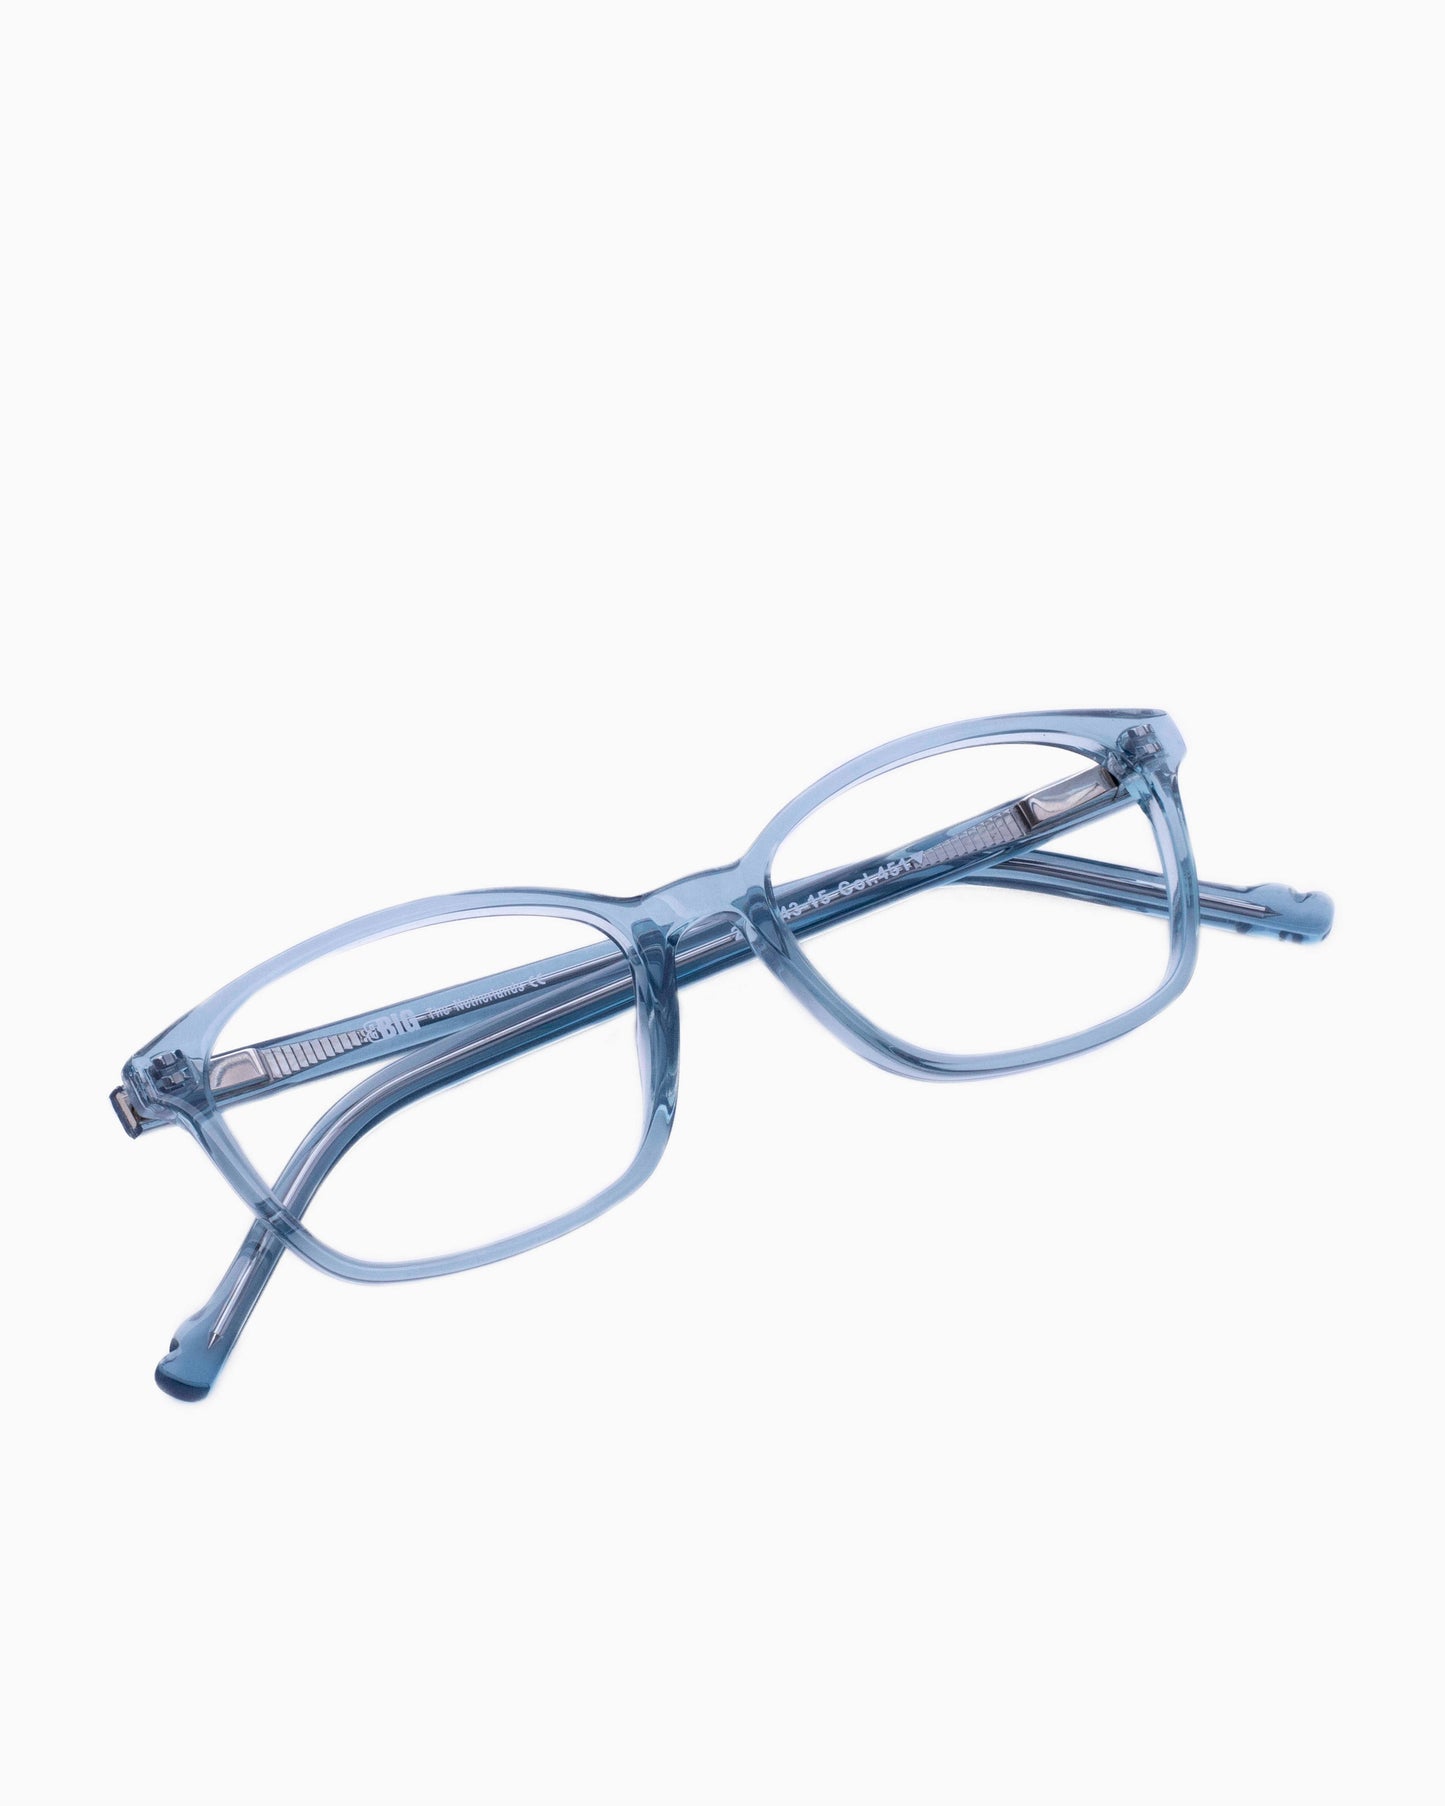 BBig - 234 - 451 | glasses bar